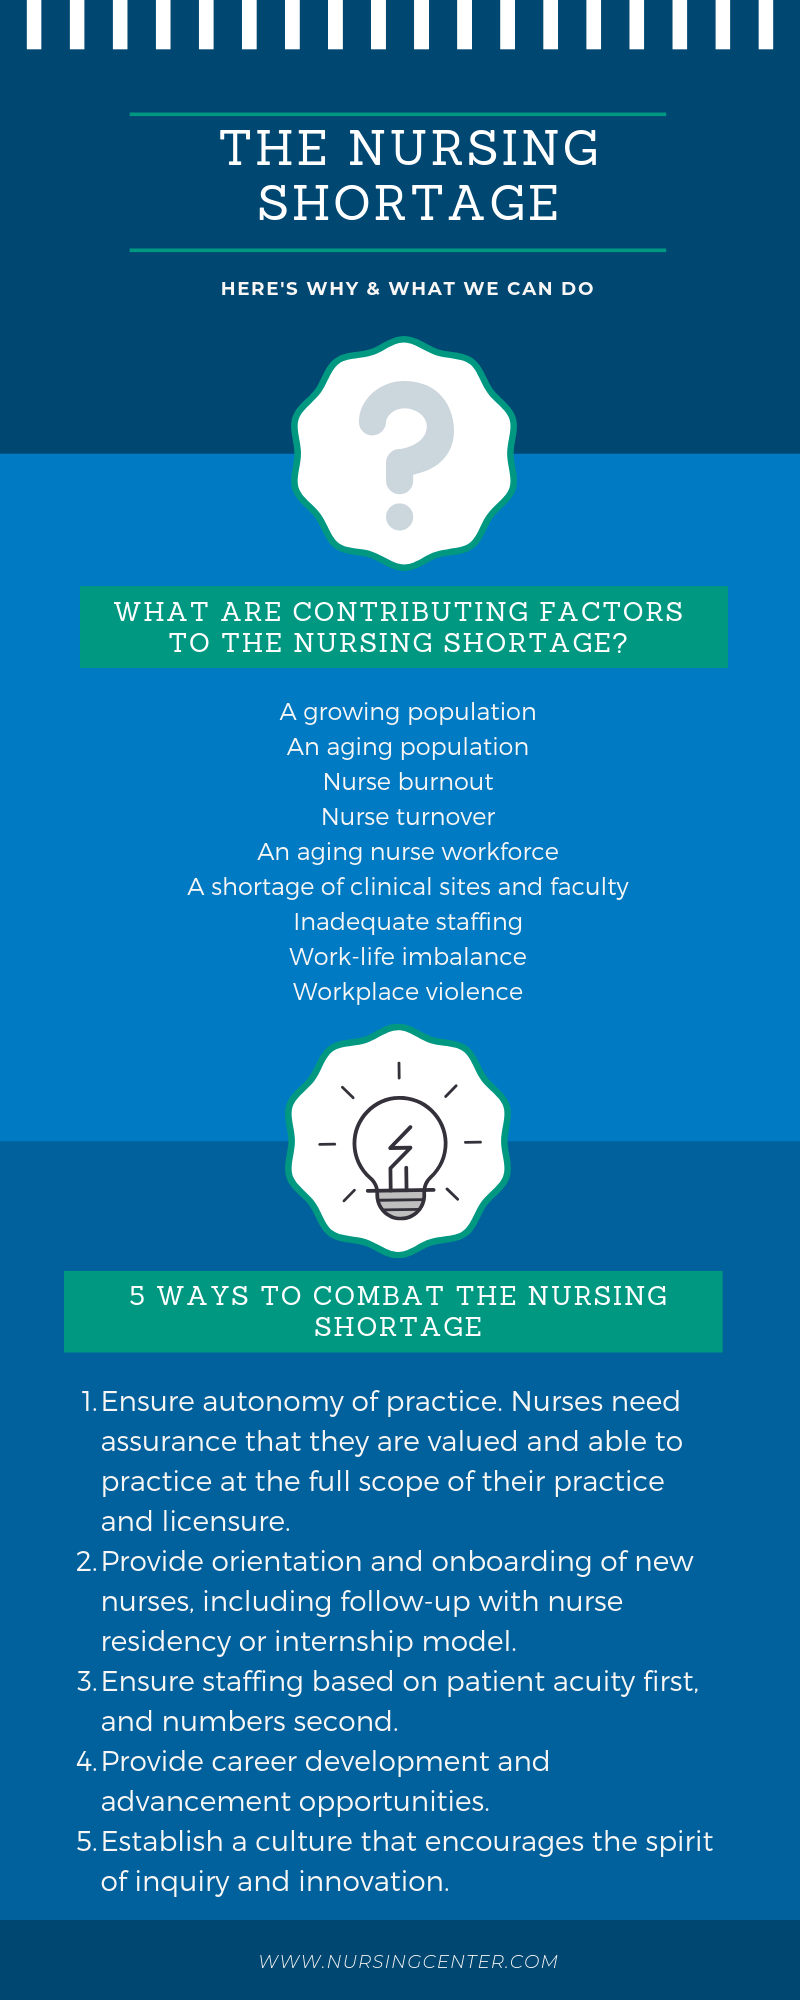 Top 5 Things Nurses Need to Address Nursing Shortage